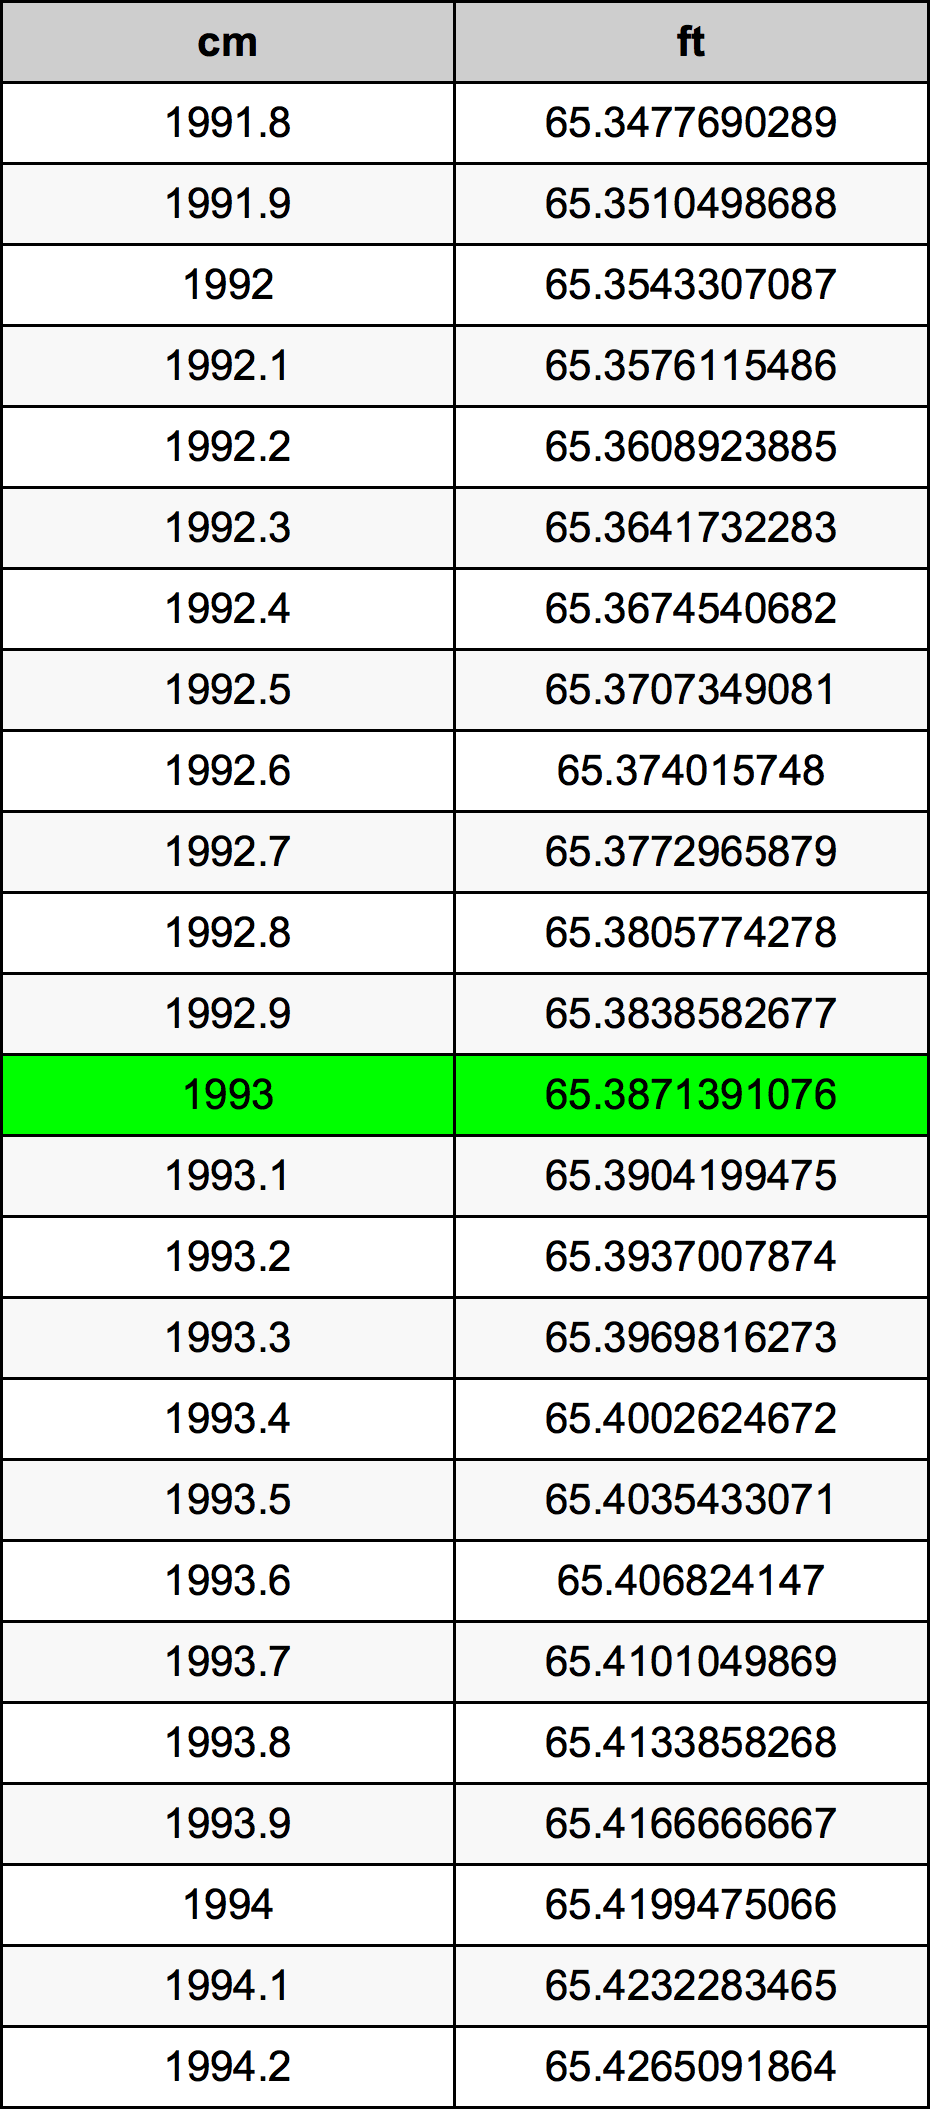 1993 Centimètre table de conversion